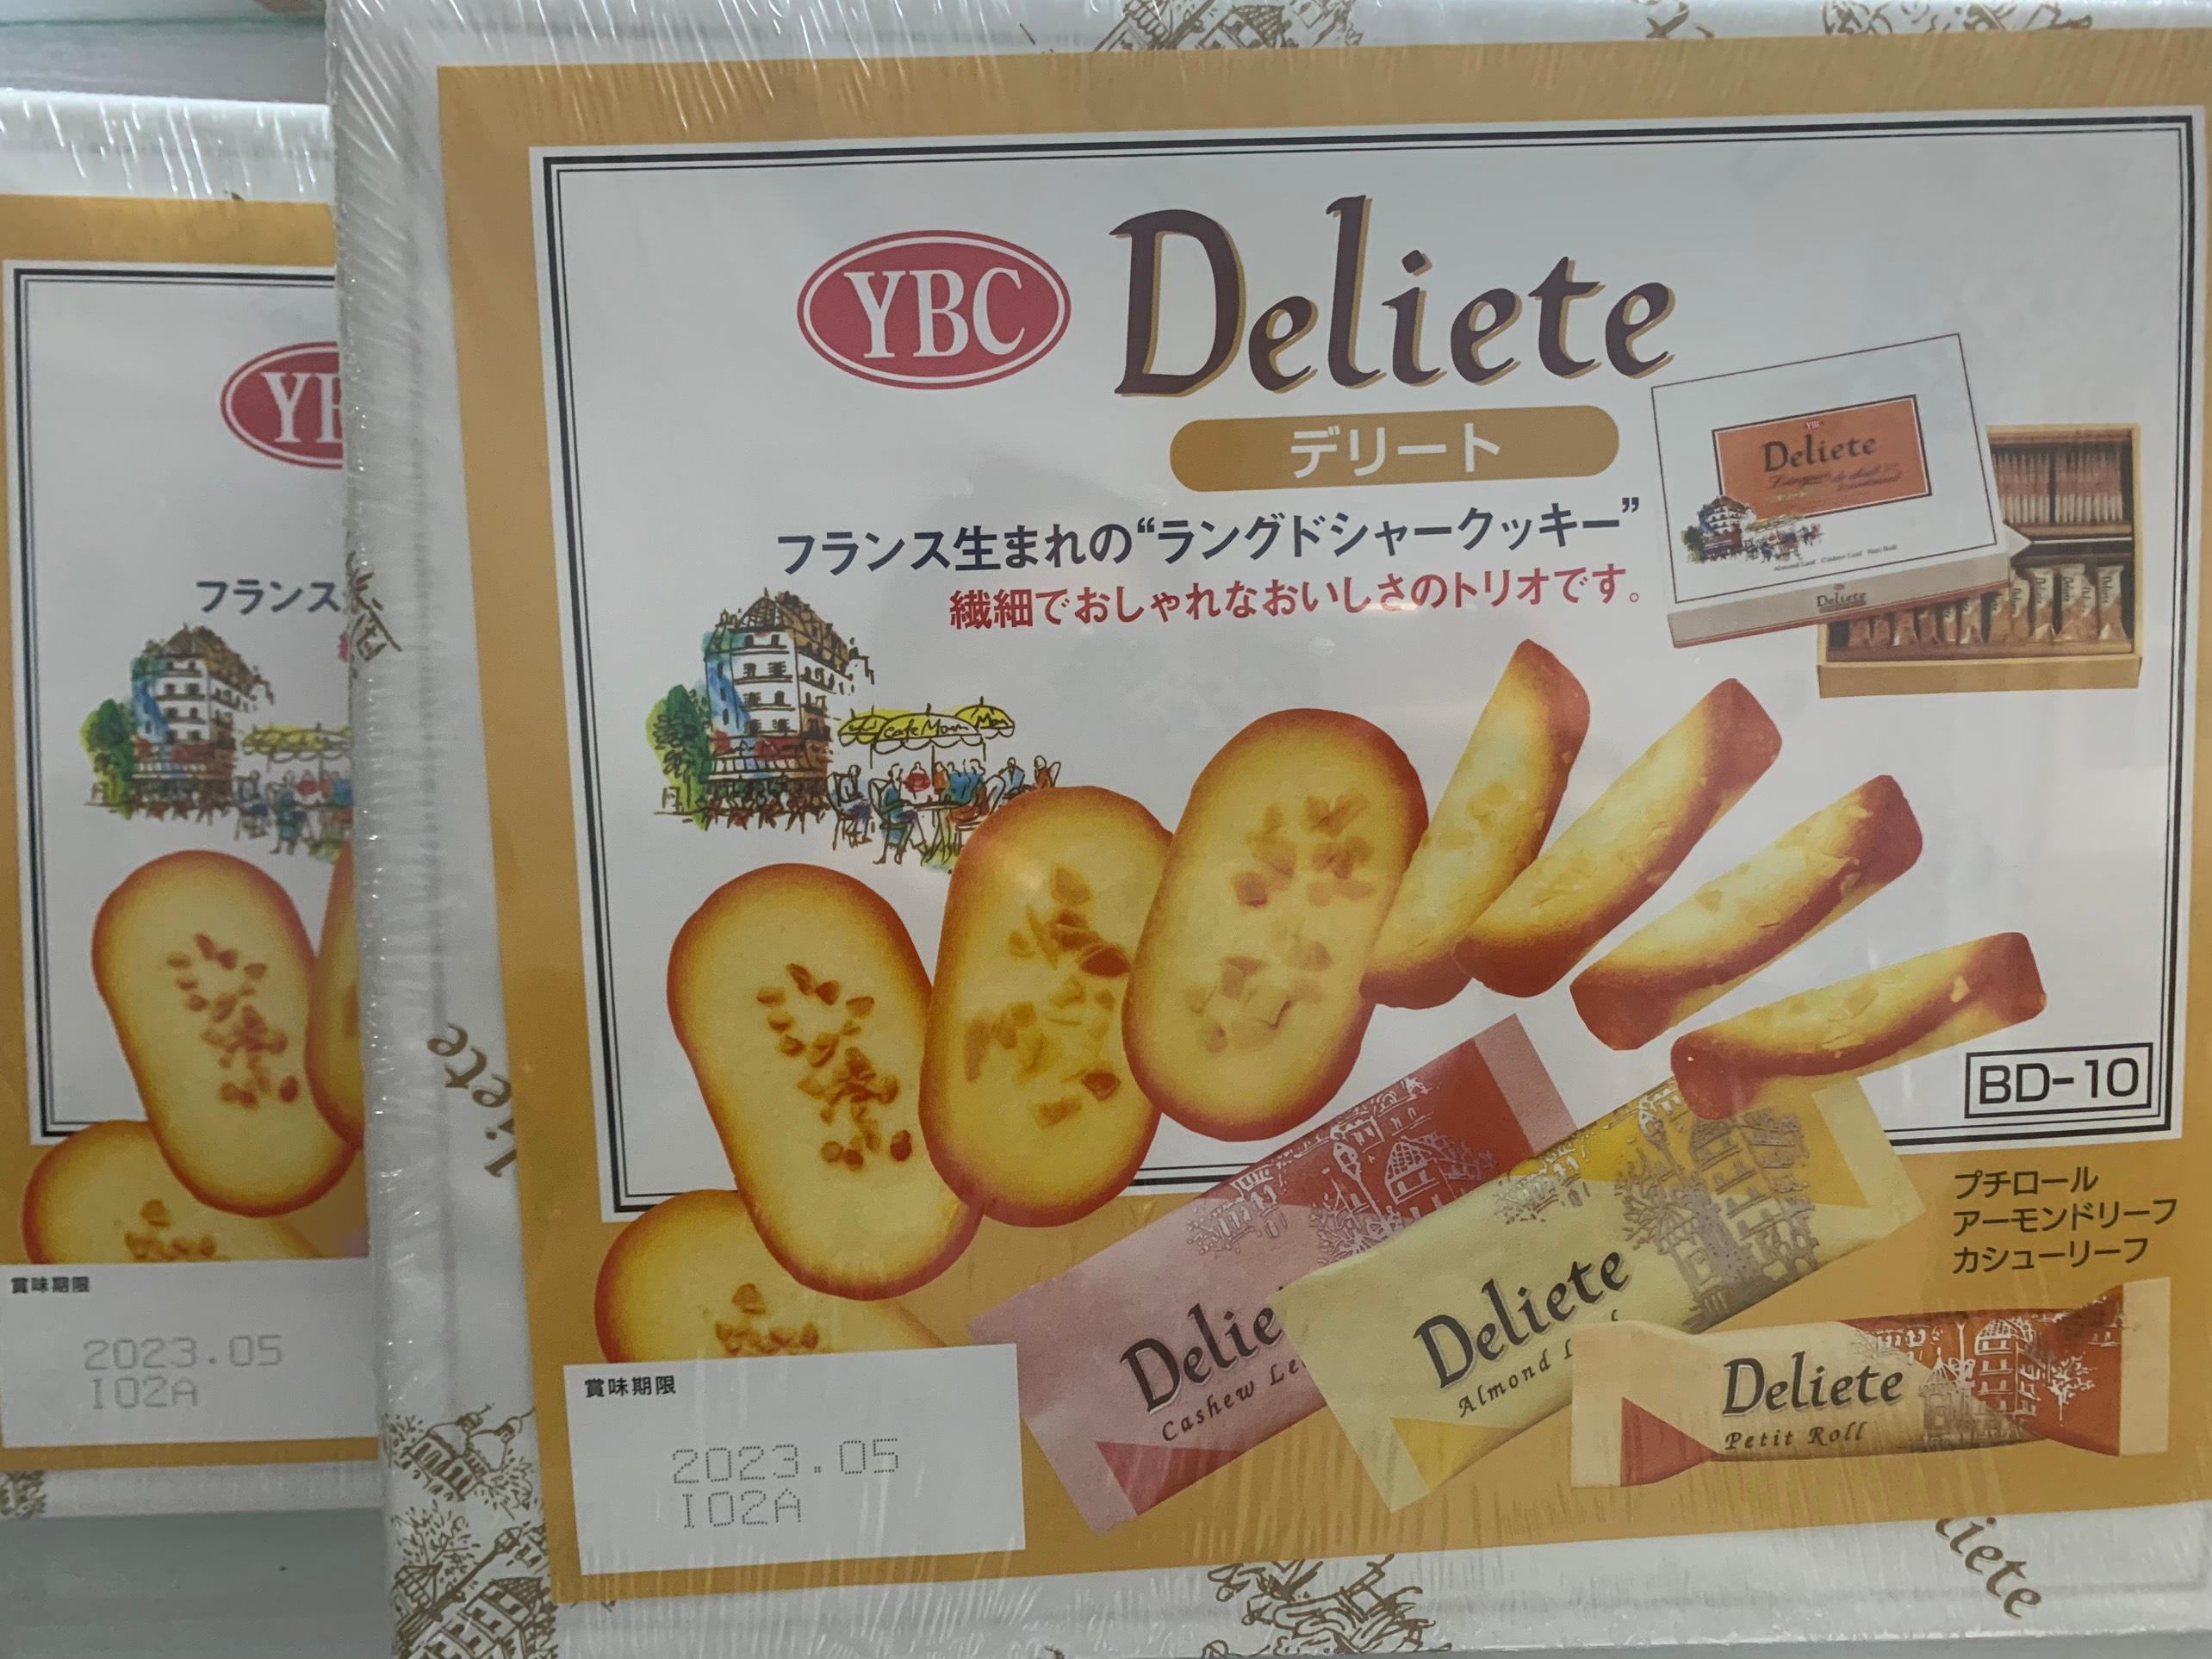 Bánh quy tổng hợp YBC Deliete cao cấp 60 cái Nhật Bản